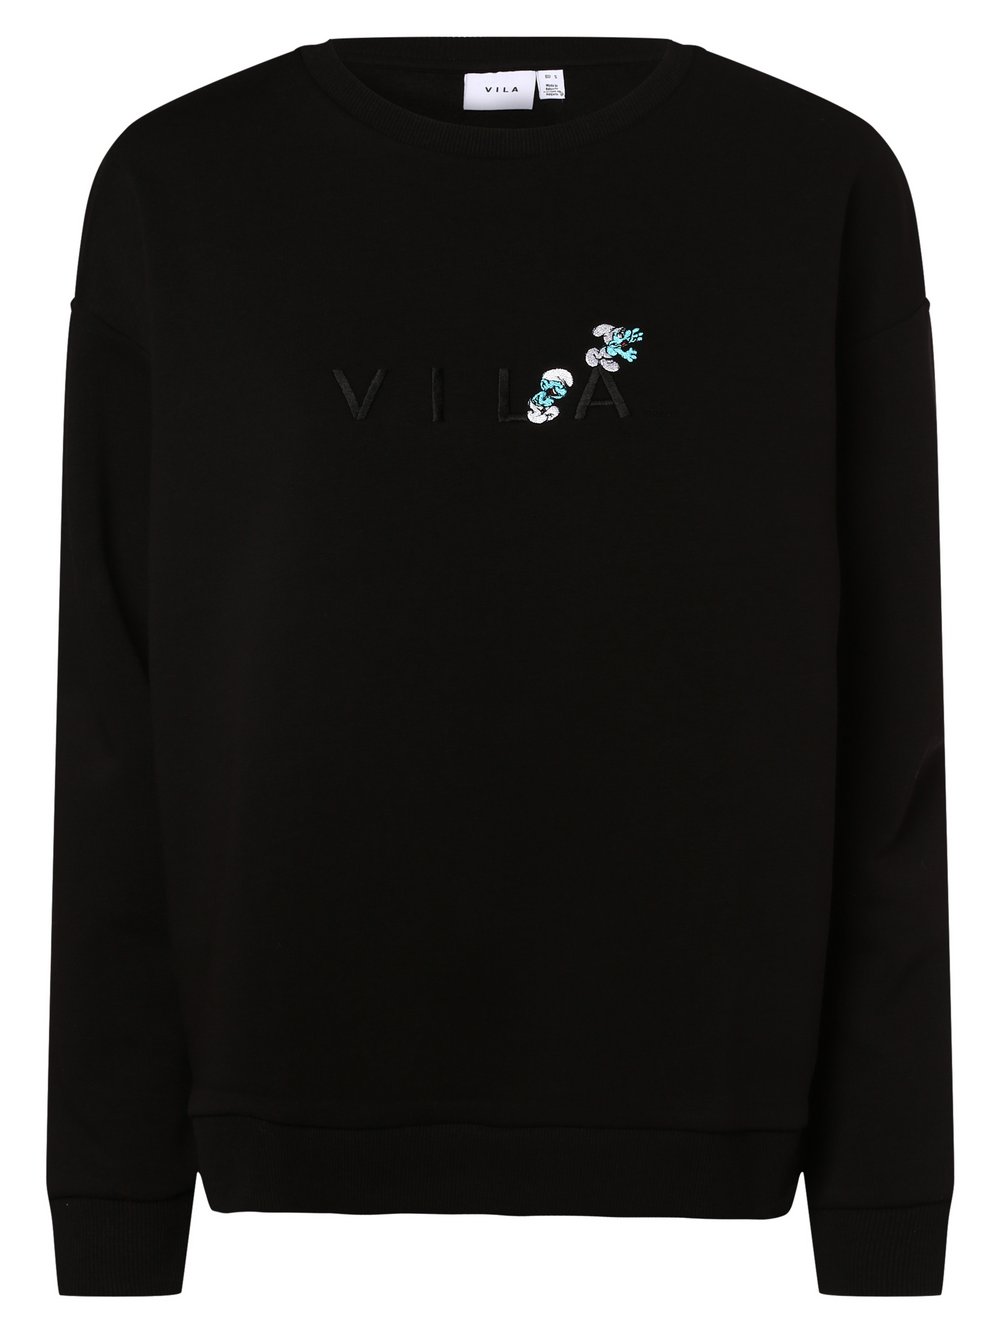 Vila - Damska bluza nierozpinana – VISmurfy, czarny